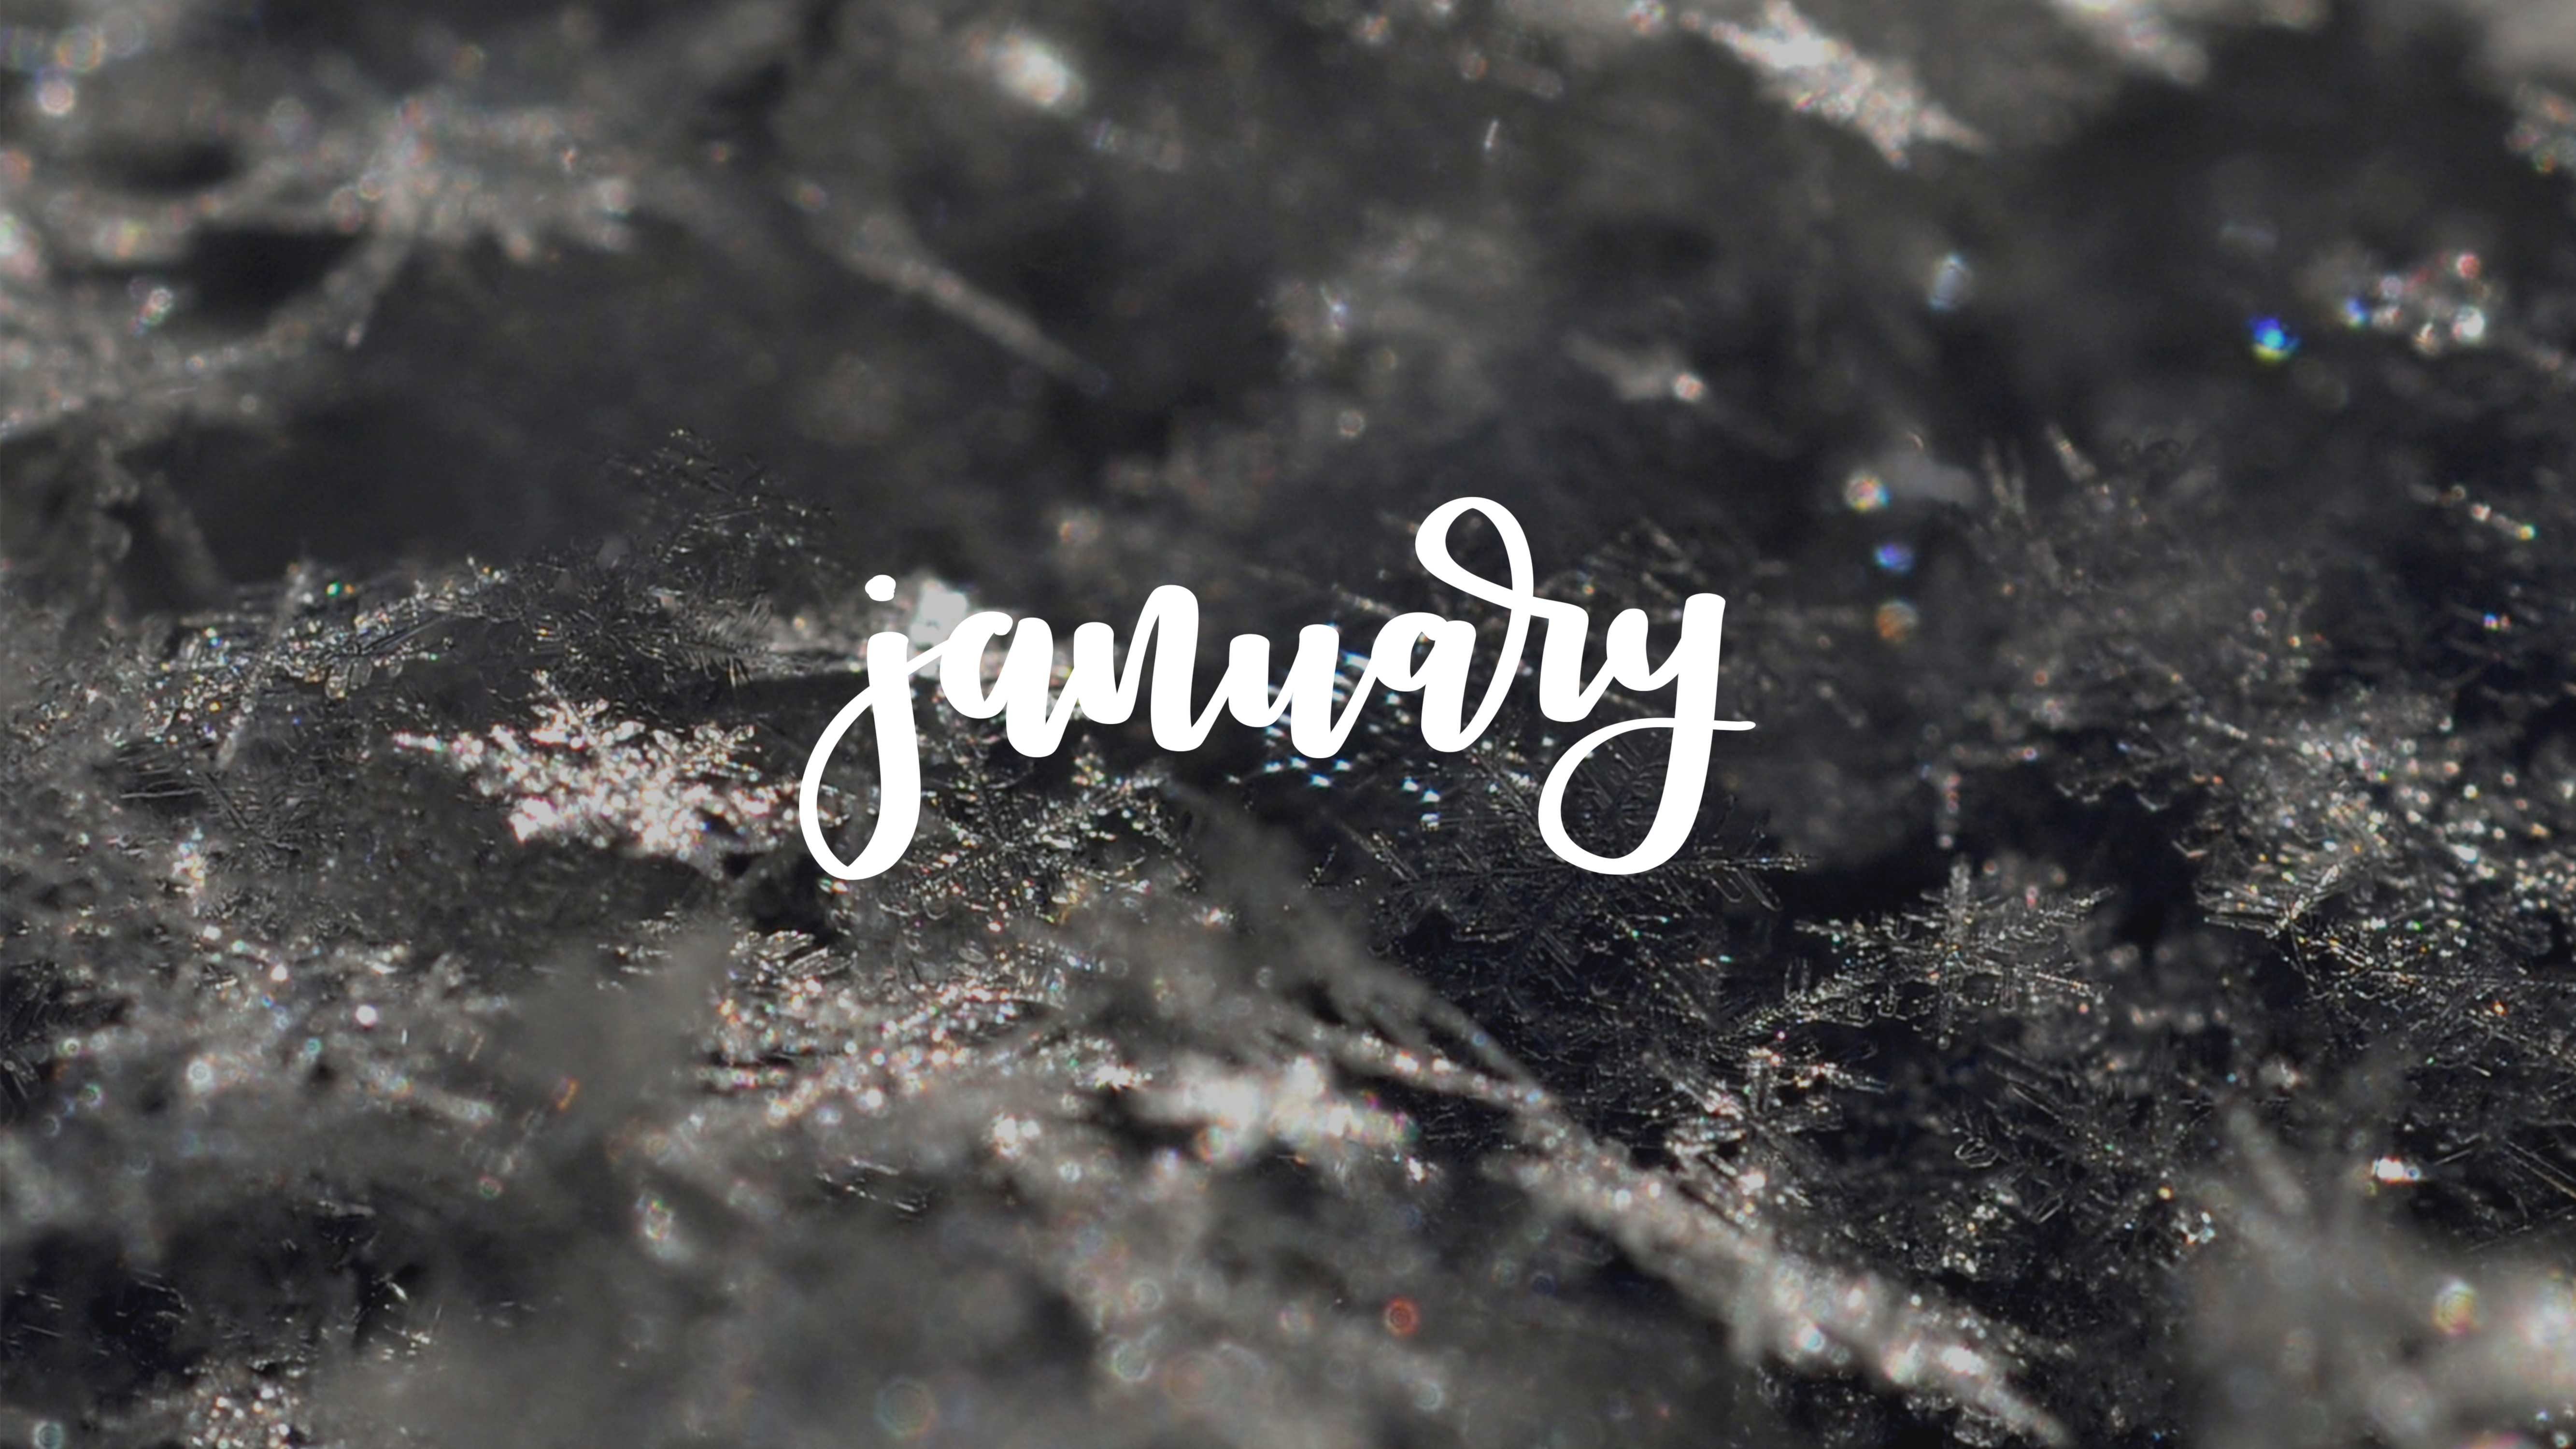 [48+] January Wallpapers - WallpaperSafari